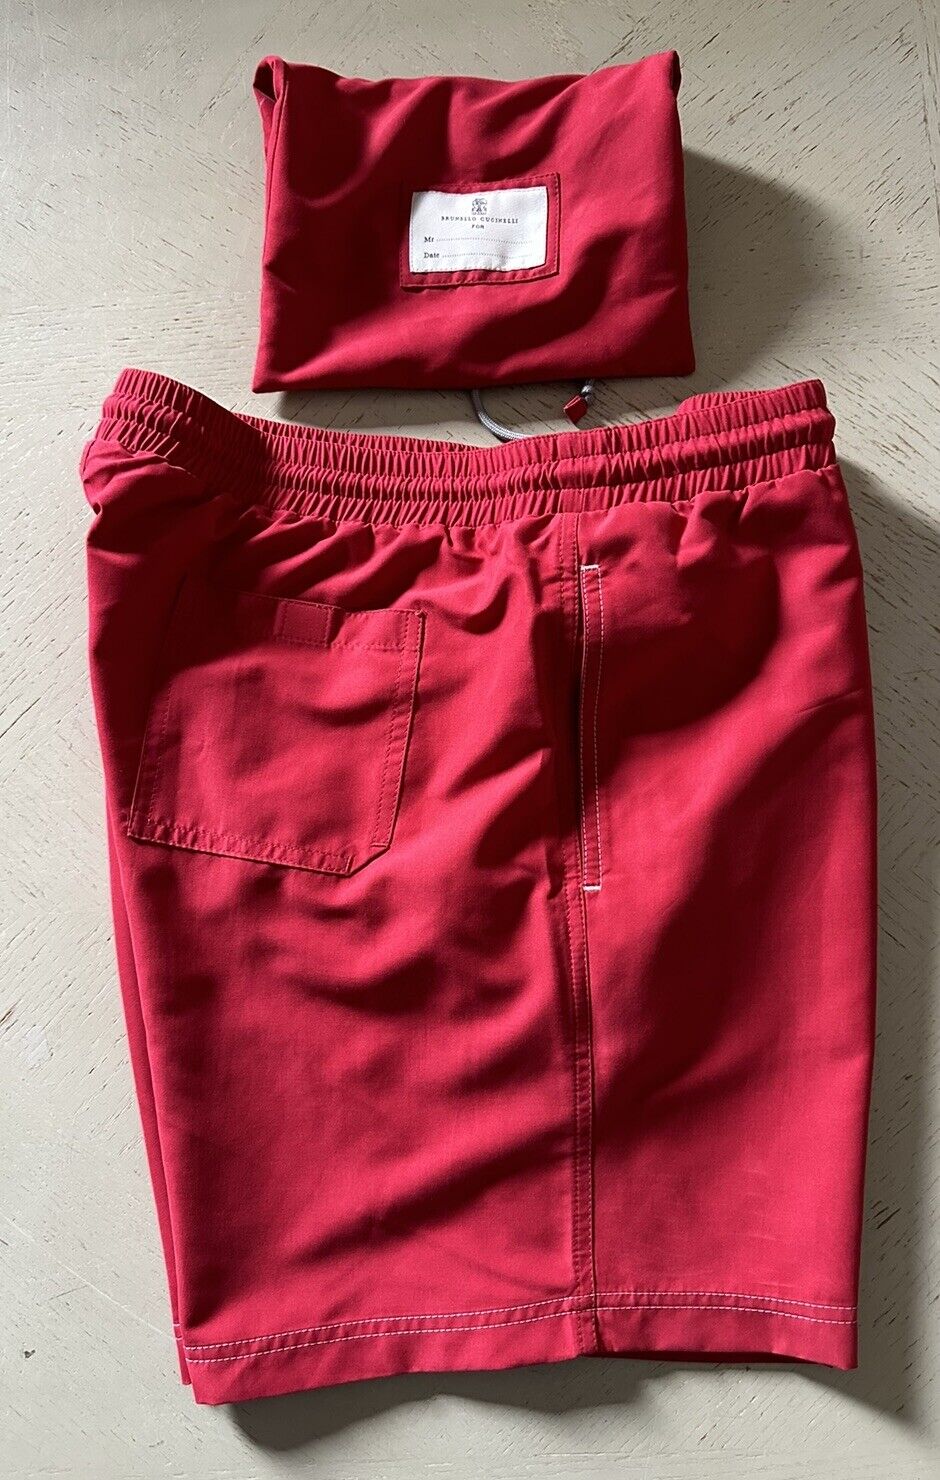 Neu mit Etikett: 550 $ Brunello Cucinelli Herren-Badeshorts mit Kordelzug, Farbe Rot, M, Italien